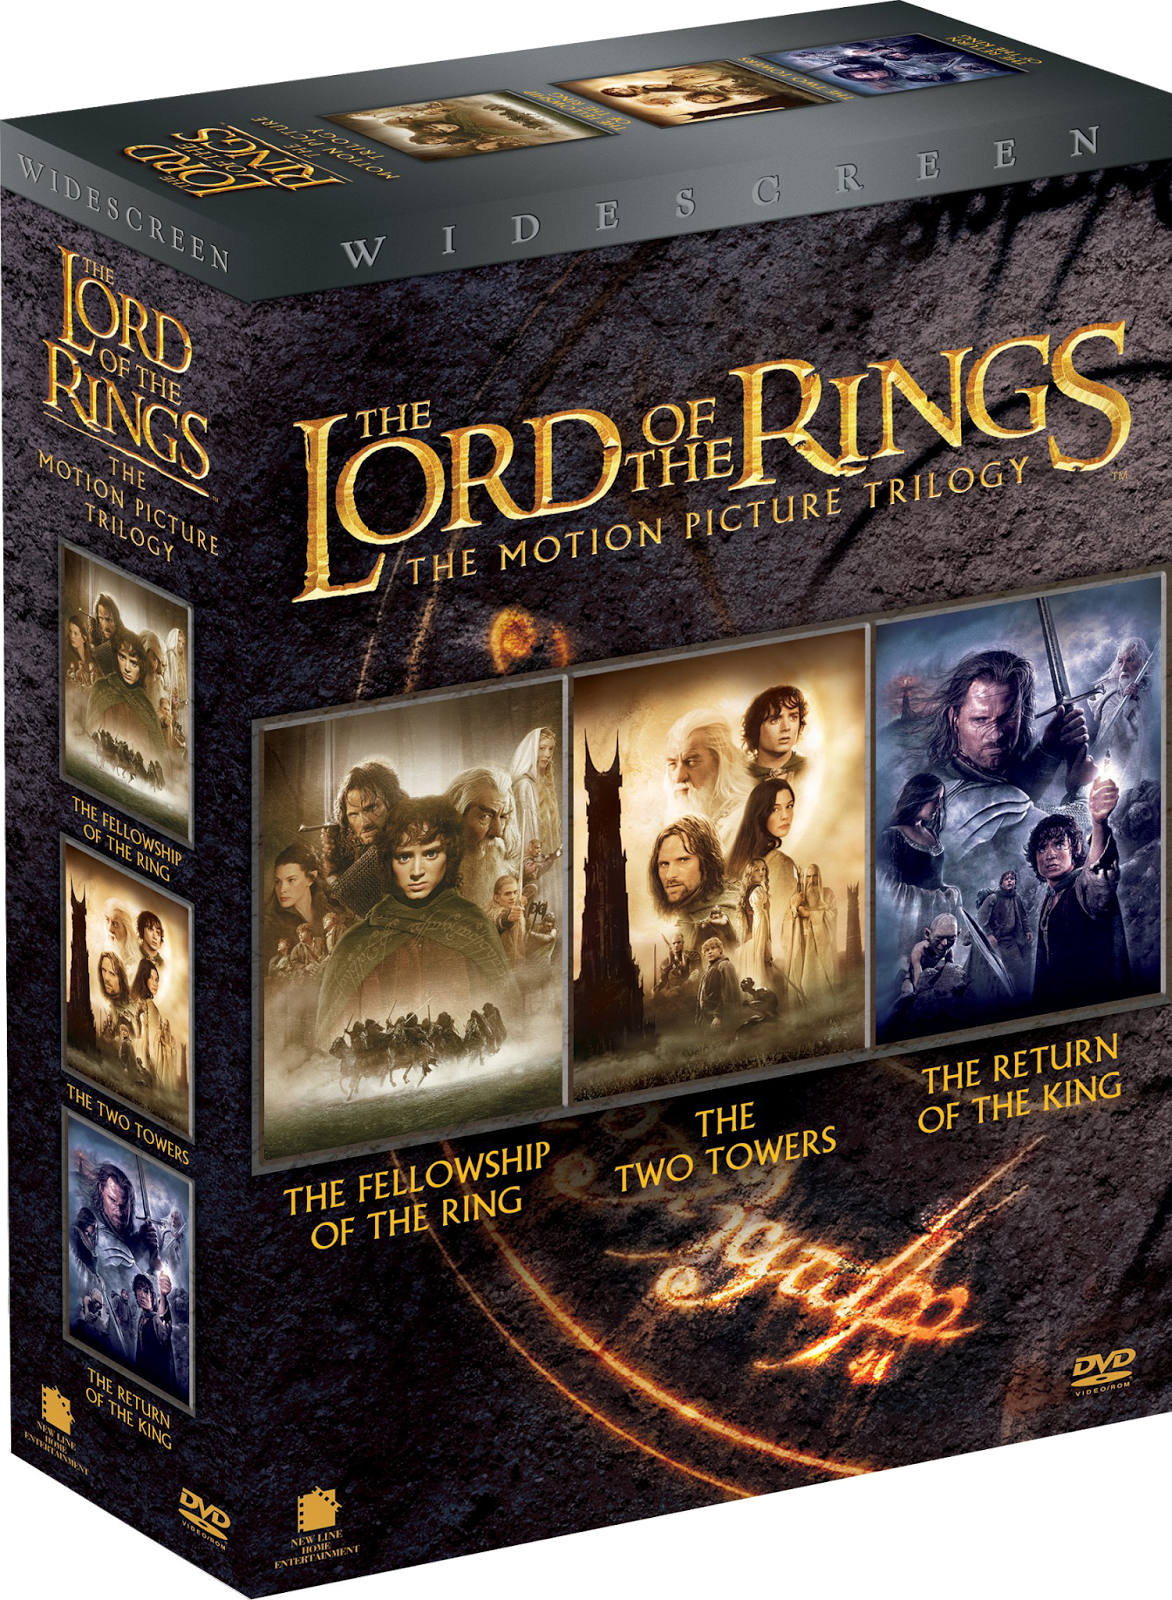 [Mini-HD][Boxset] The Lord of the Rings Trilogy (2001-2003) Extended Edition - เดอะลอร์ดออฟเดอะริงส์ ภาค 1-3 (ตัวเต็มไม่ตัด) [720p][เสียง:ไทย AC3/Eng AC3][ซับ:ไทย/Eng][.MKV] TLR_LoadMovieFilecondo.blogspot.com